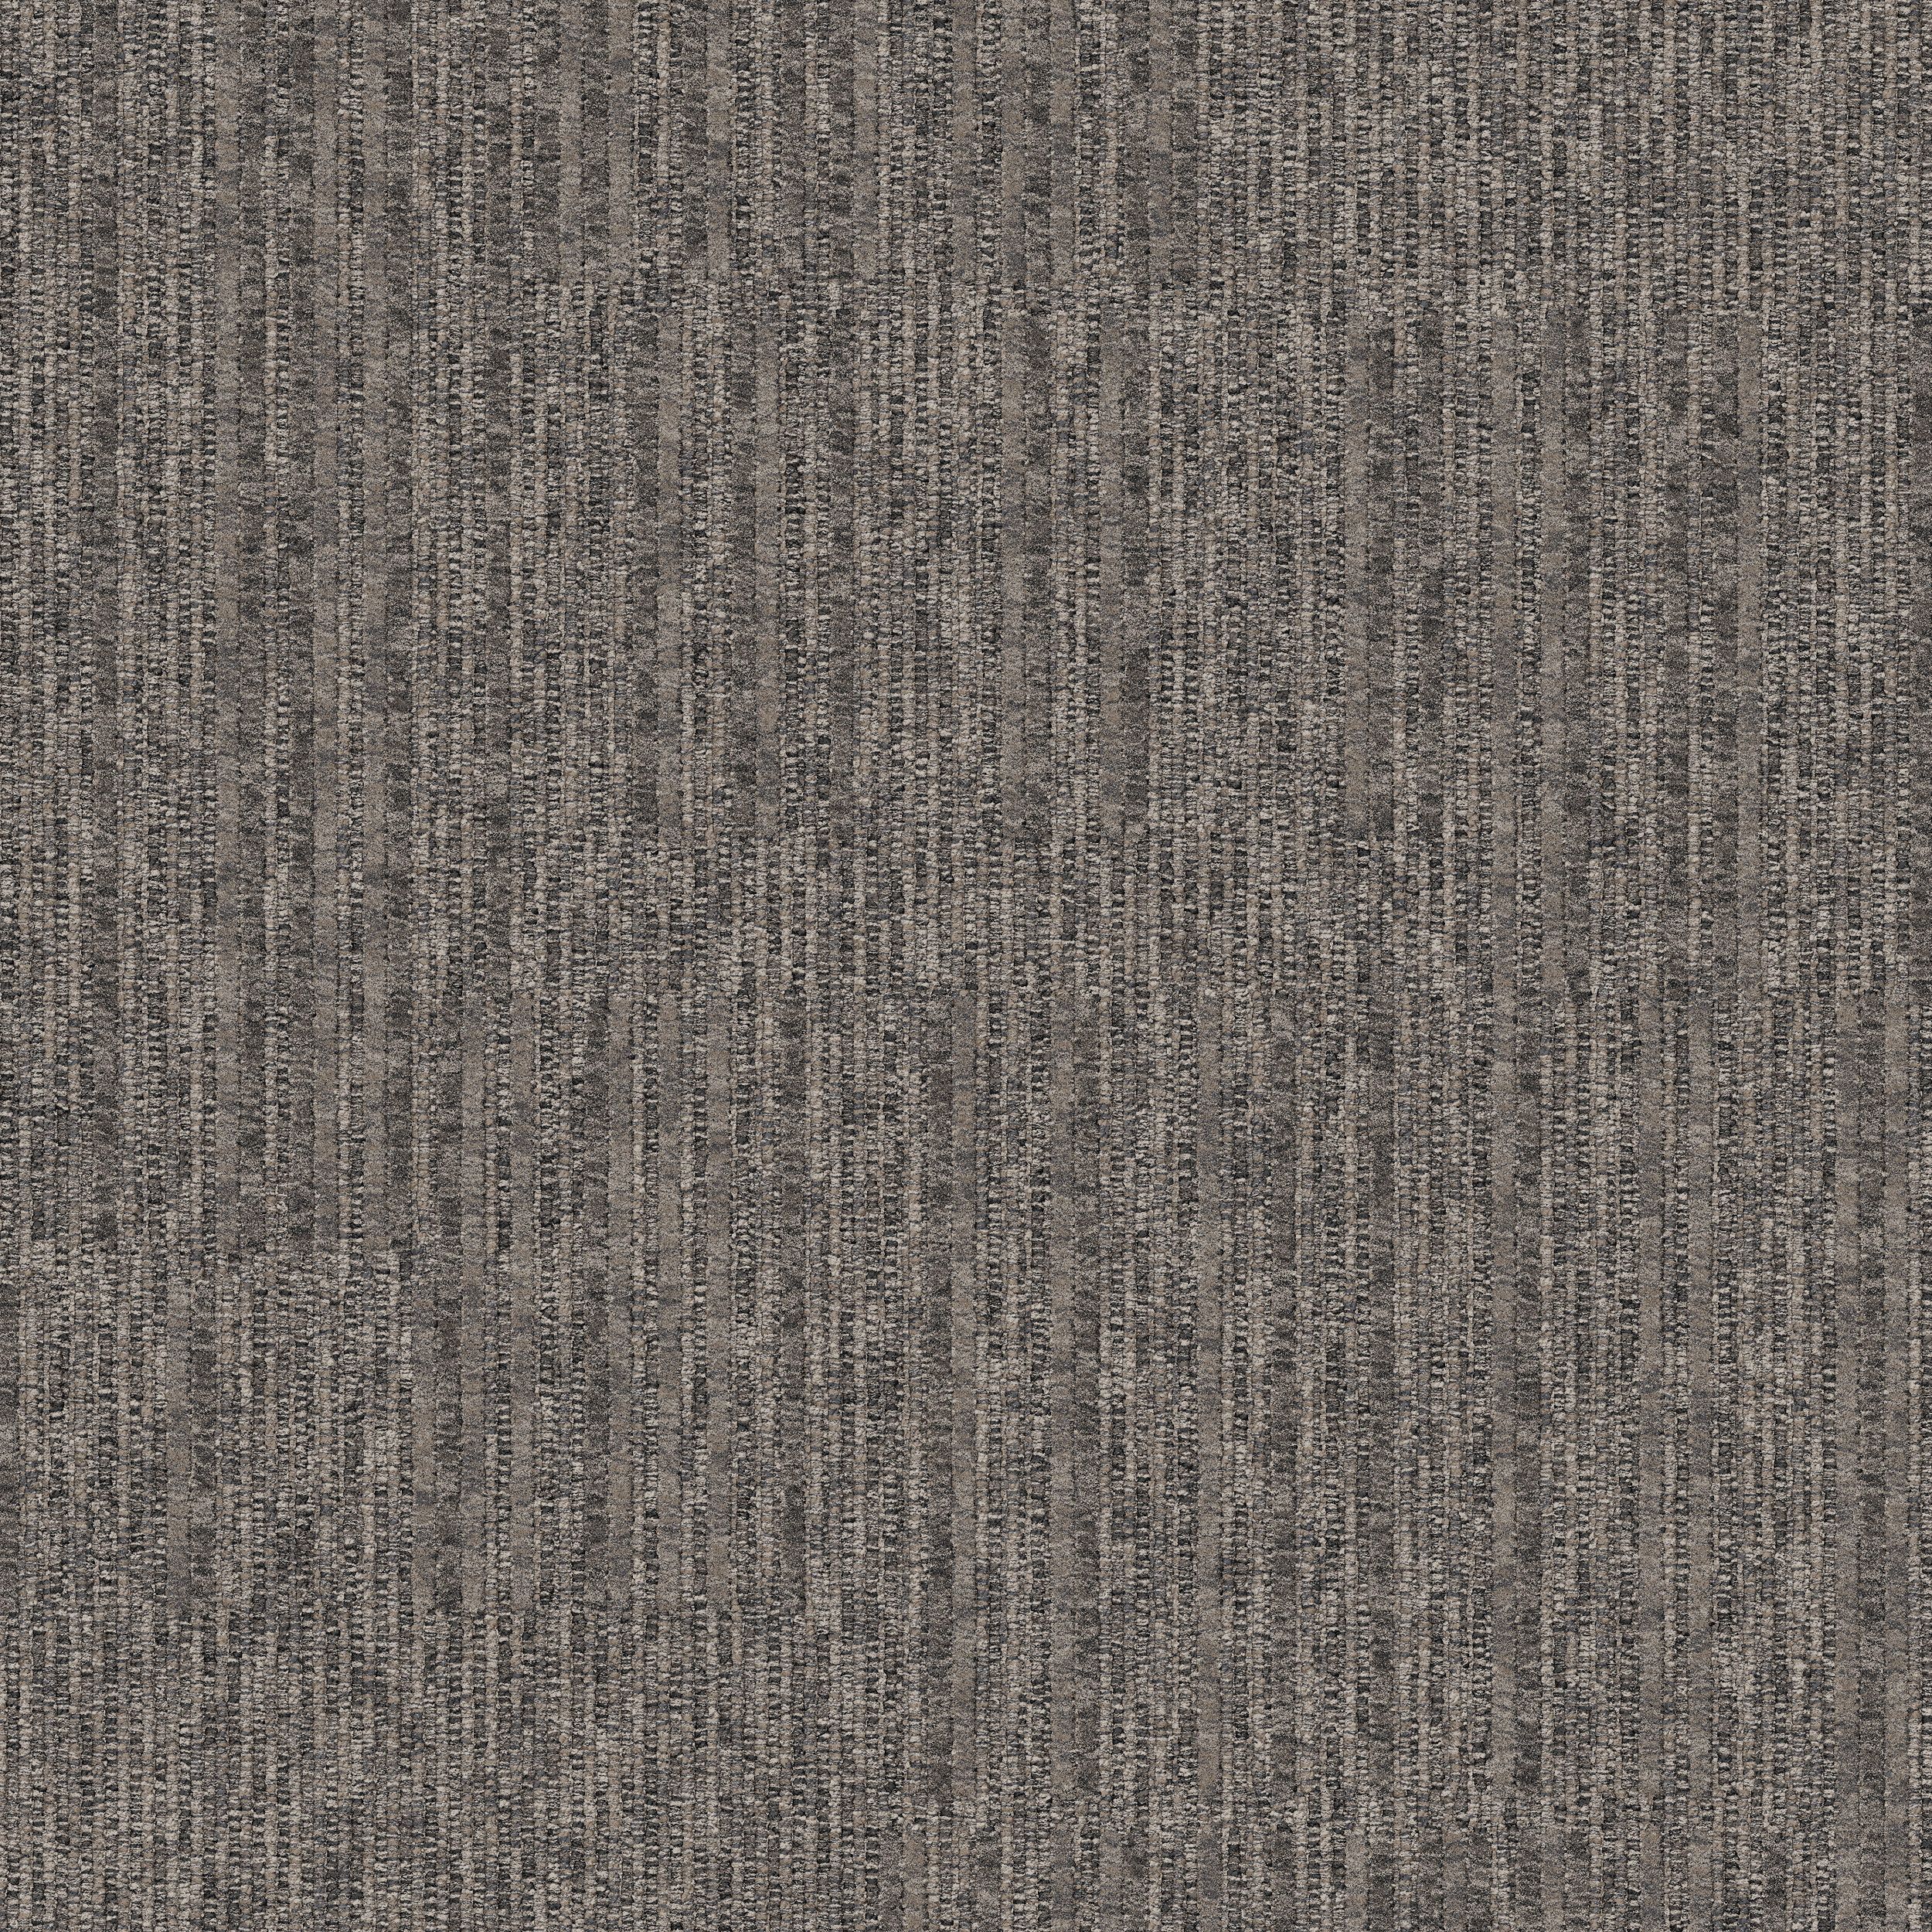 Equilibrium Carpet Tile In Persistence número de imagen 2